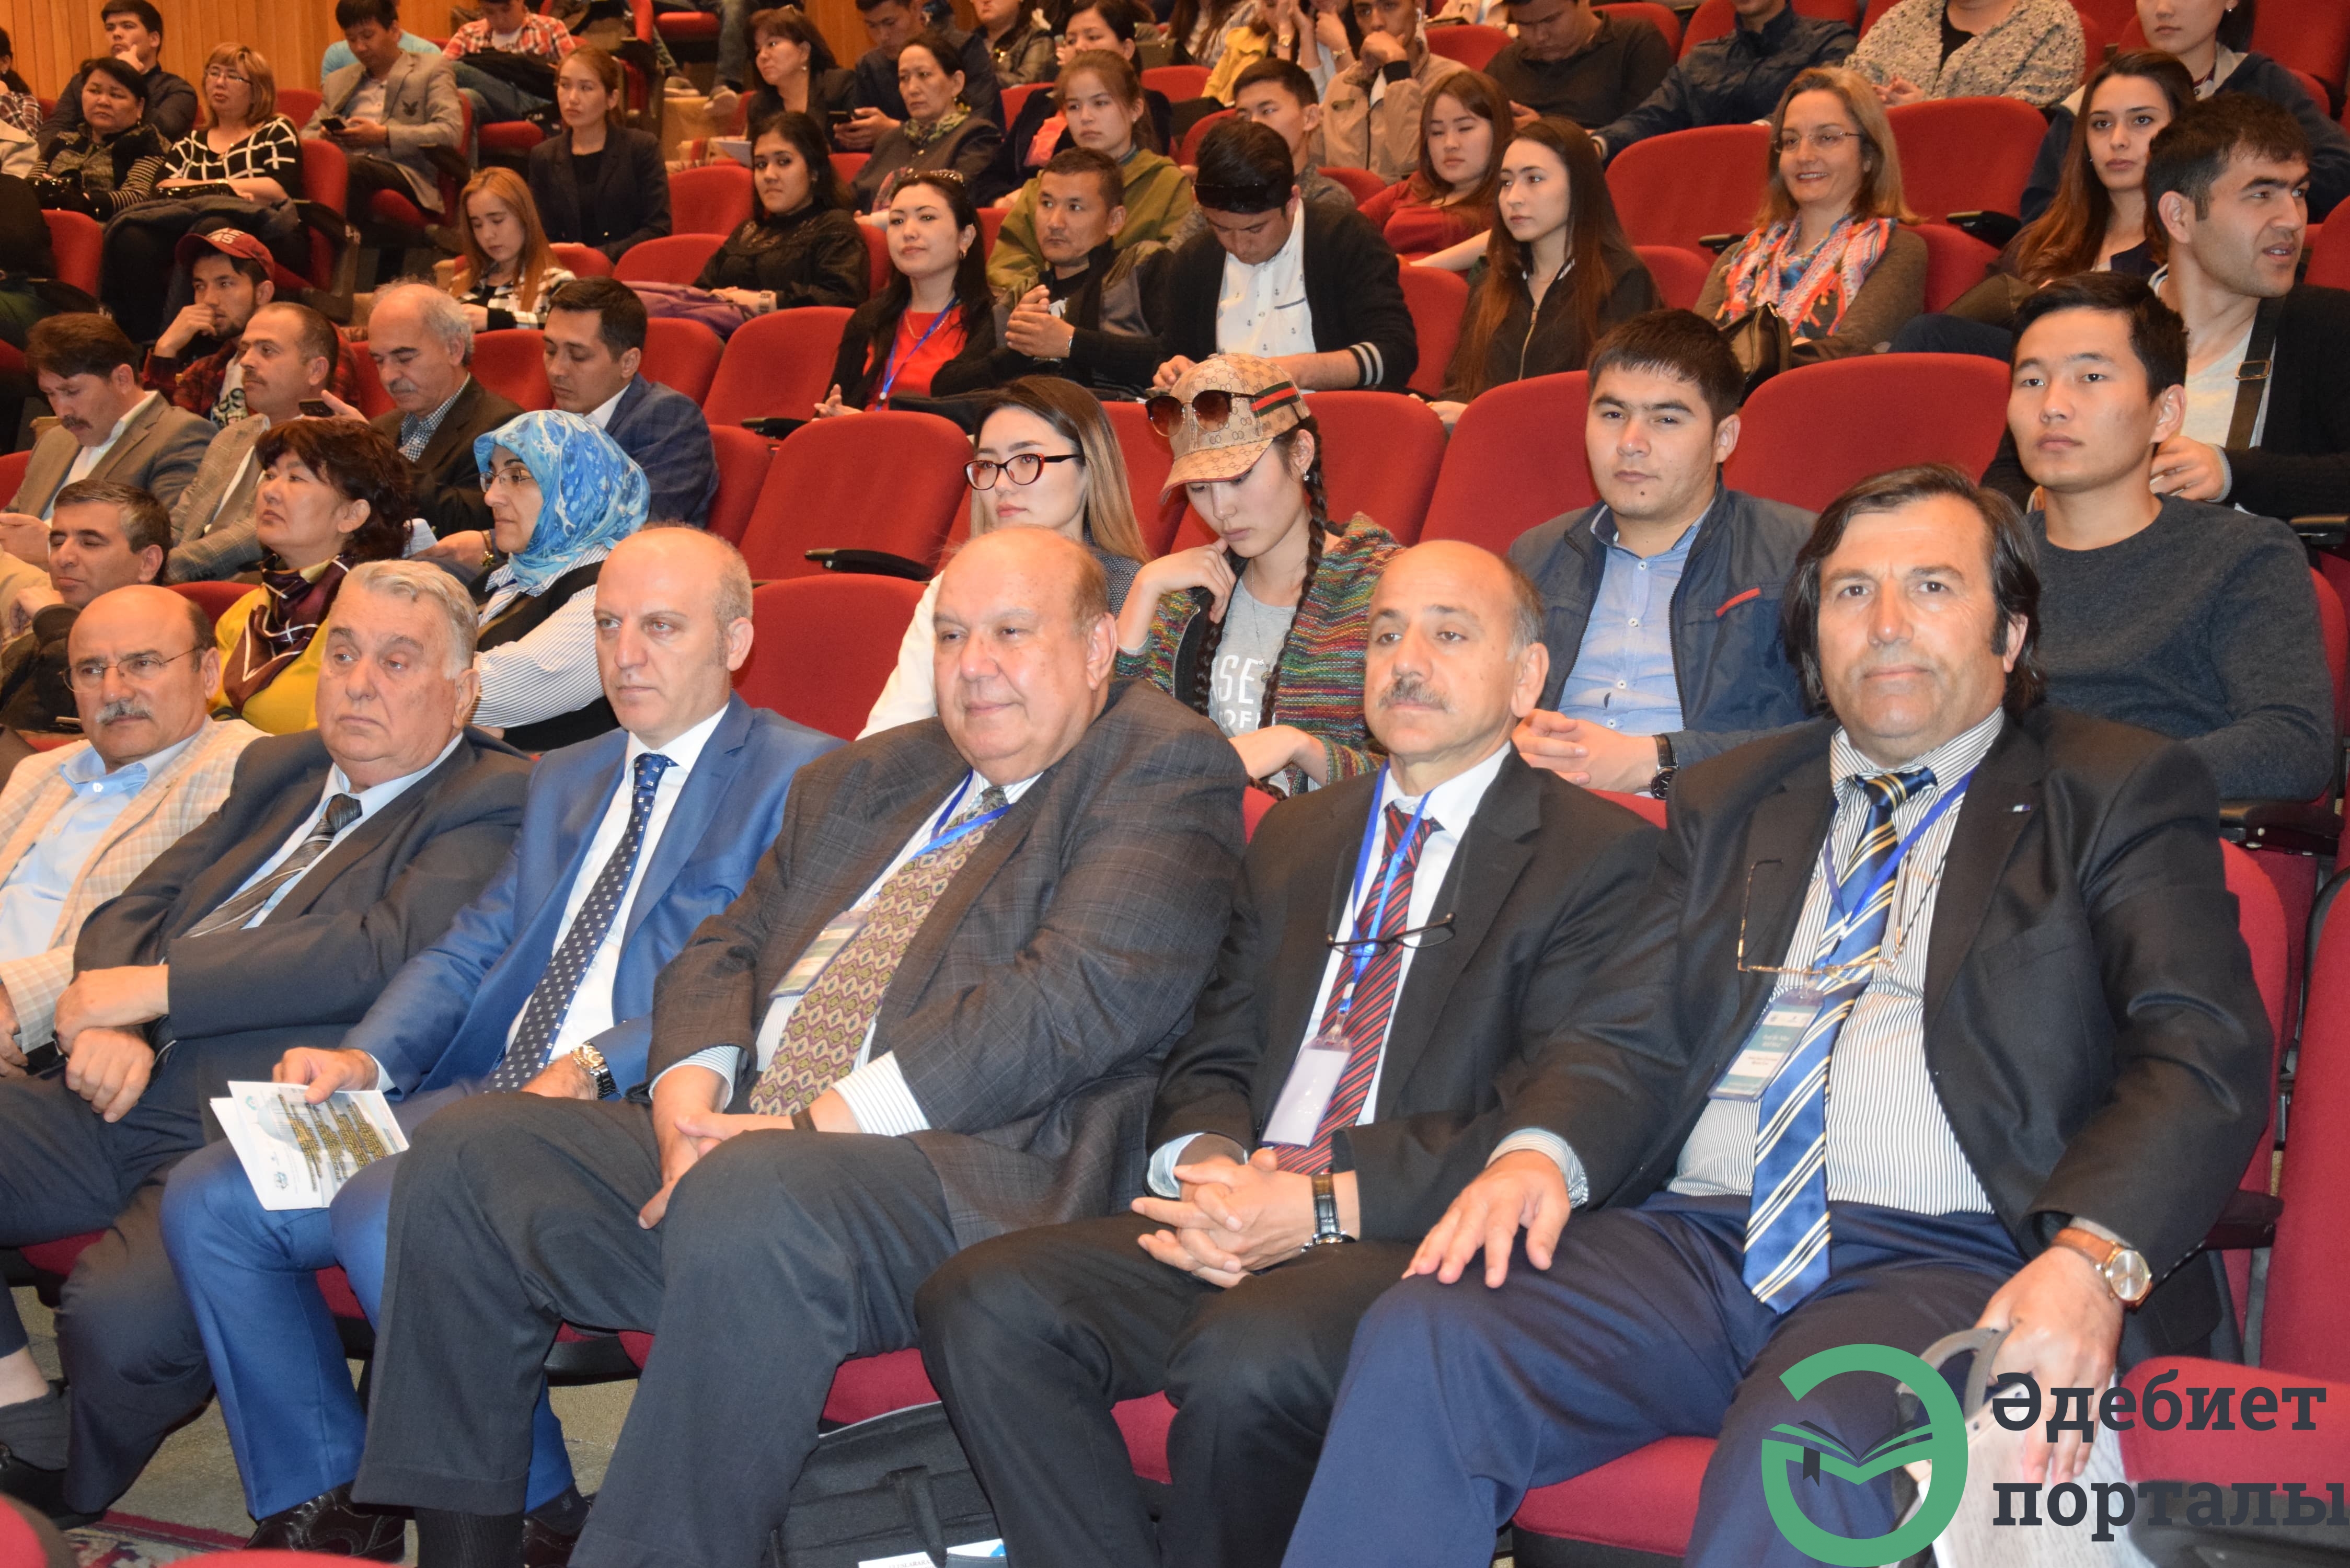 Халықаралық әлеуметтік ғылымдар конгресі: ІІІ Түркістан форумы  - фото 18 - adebiportal.kz